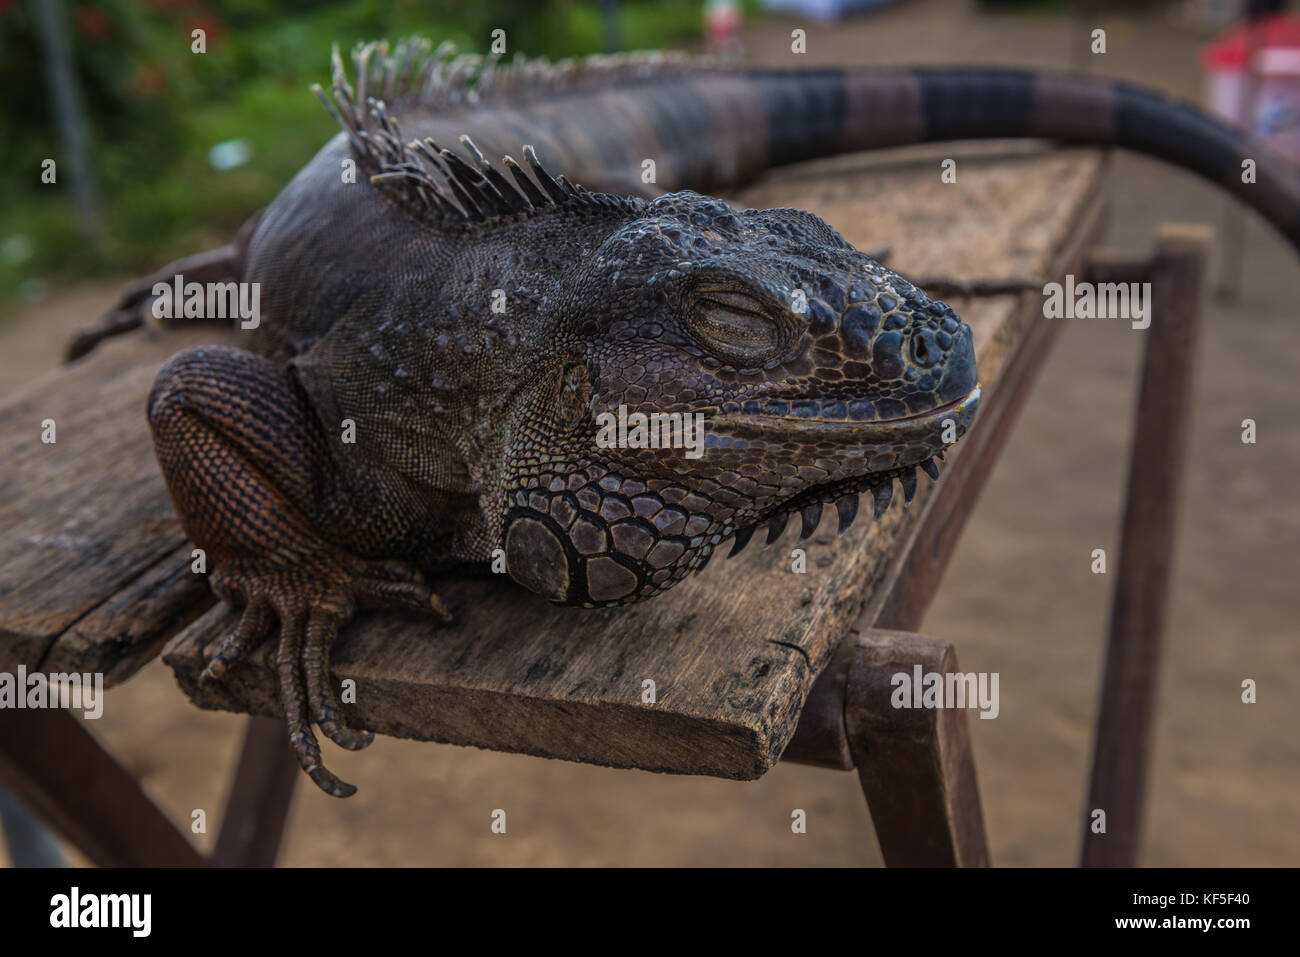 Le varan repose sur la table. close-up lizard. Banque D'Images